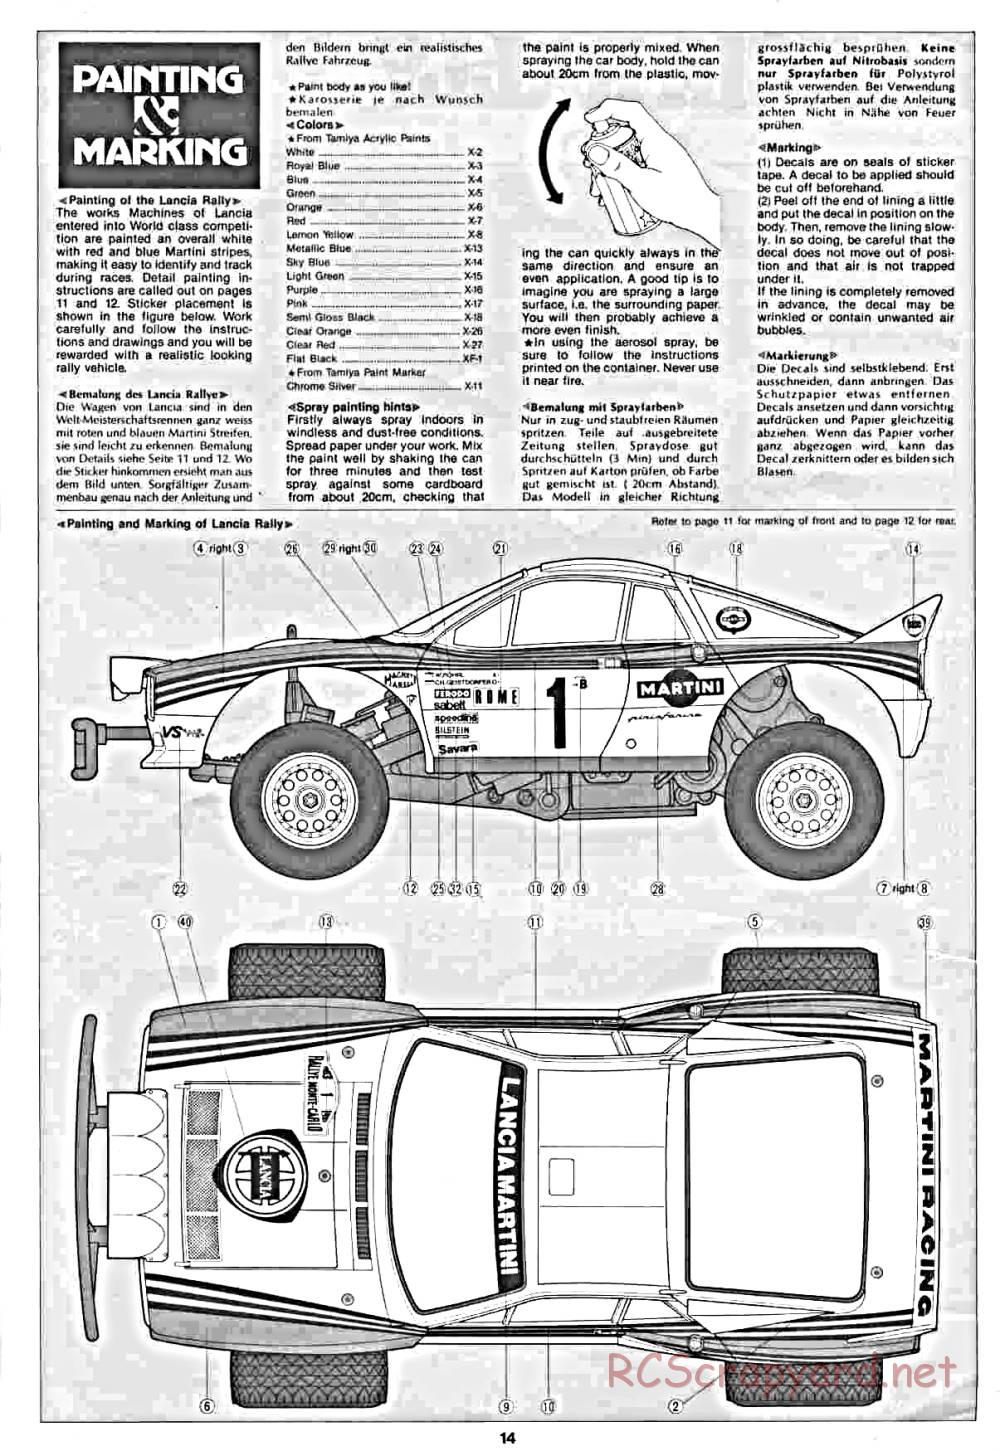 Tamiya - Lancia Rally - 58040 - Manual - Page 14